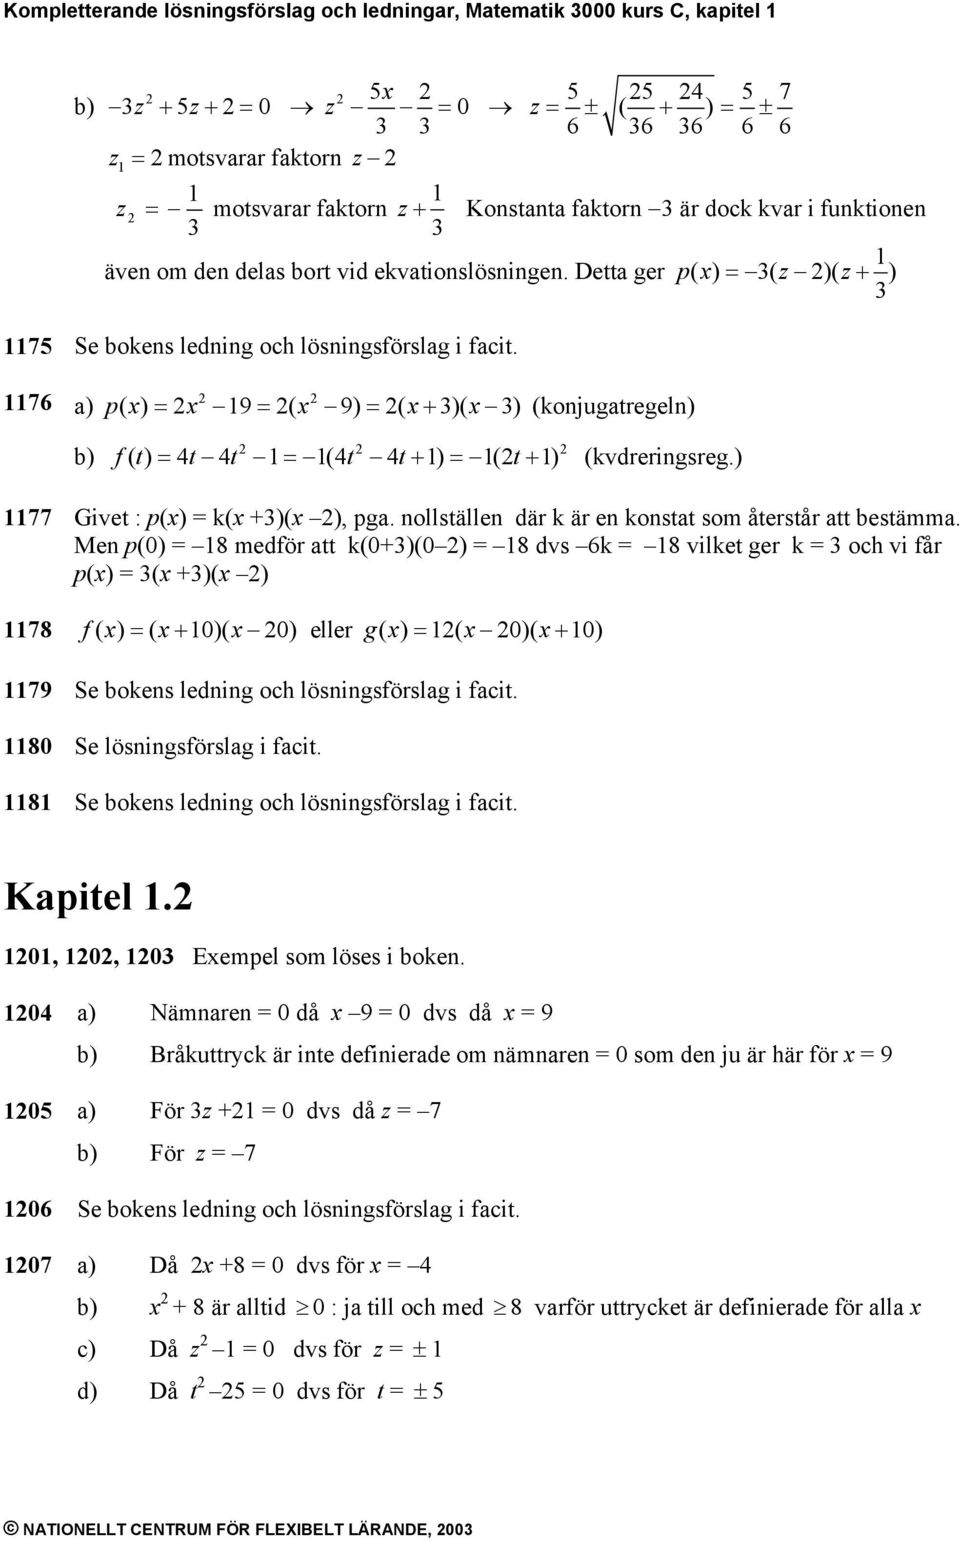 76 p ( ) 9 ( 9) ( + )( ) (konjugatregeln) f( t) t t (t t+ ) (t+ ) (kvdreringsreg.) 77 Givet : p() k( +)( ), pga. nollställen där k är en konstat som återstår att bestämma.